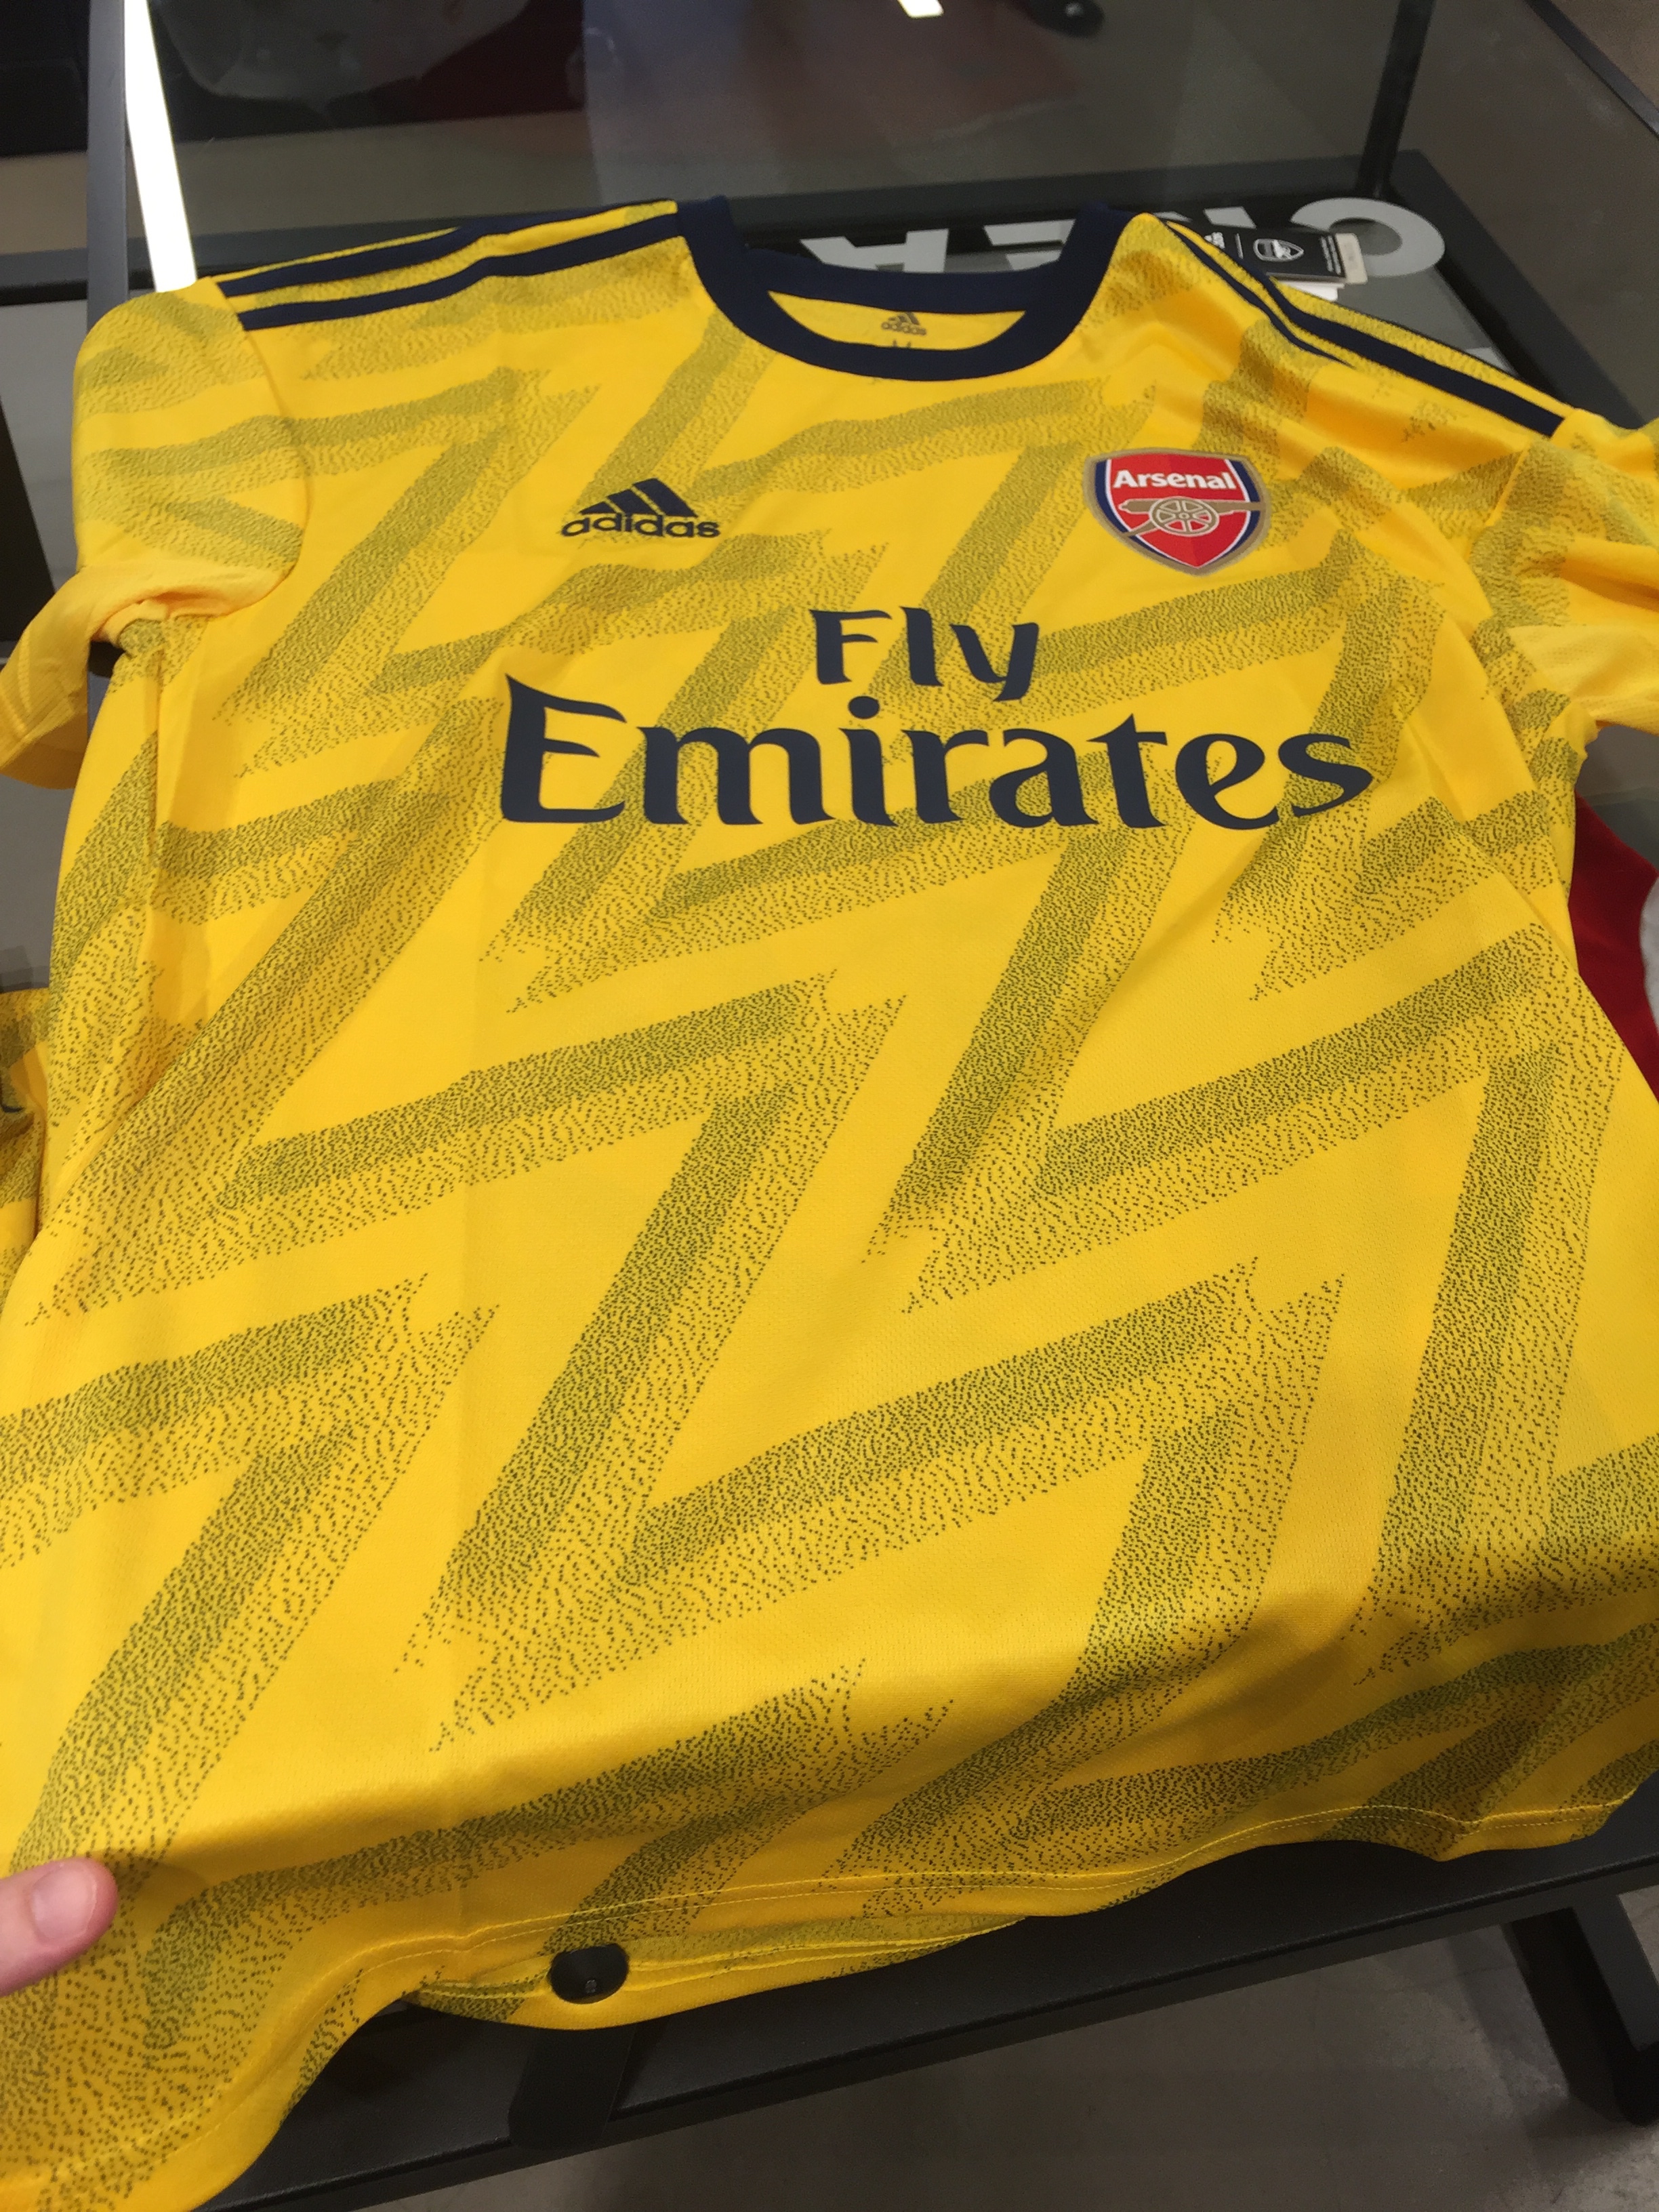 arsenal yellow kit 2019